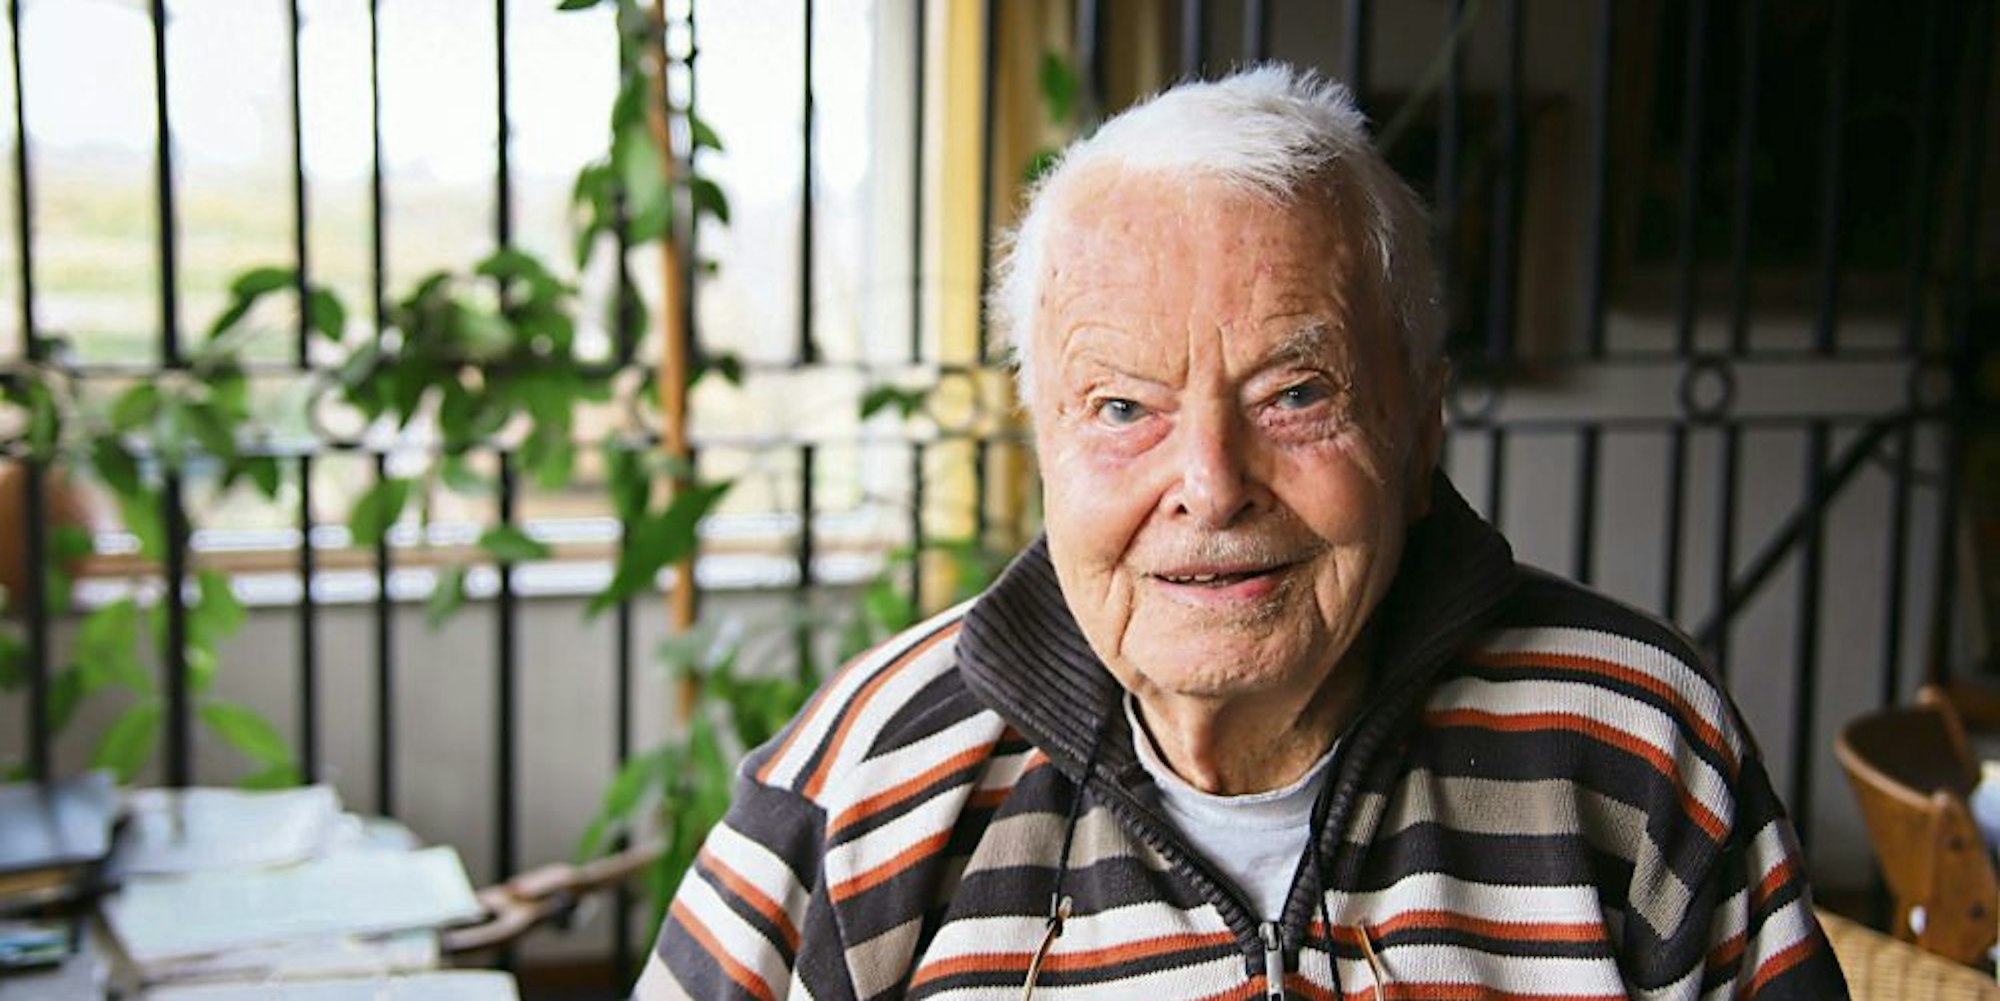 Der Bioland-Pionier Helmut Hüsgen lebt noch in seinem eigenen Haus und arbeitet an einem Buch.